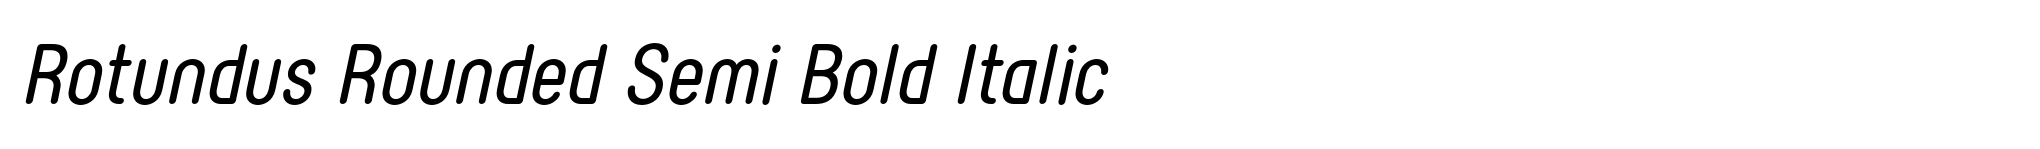 Rotundus Rounded Semi Bold Italic image